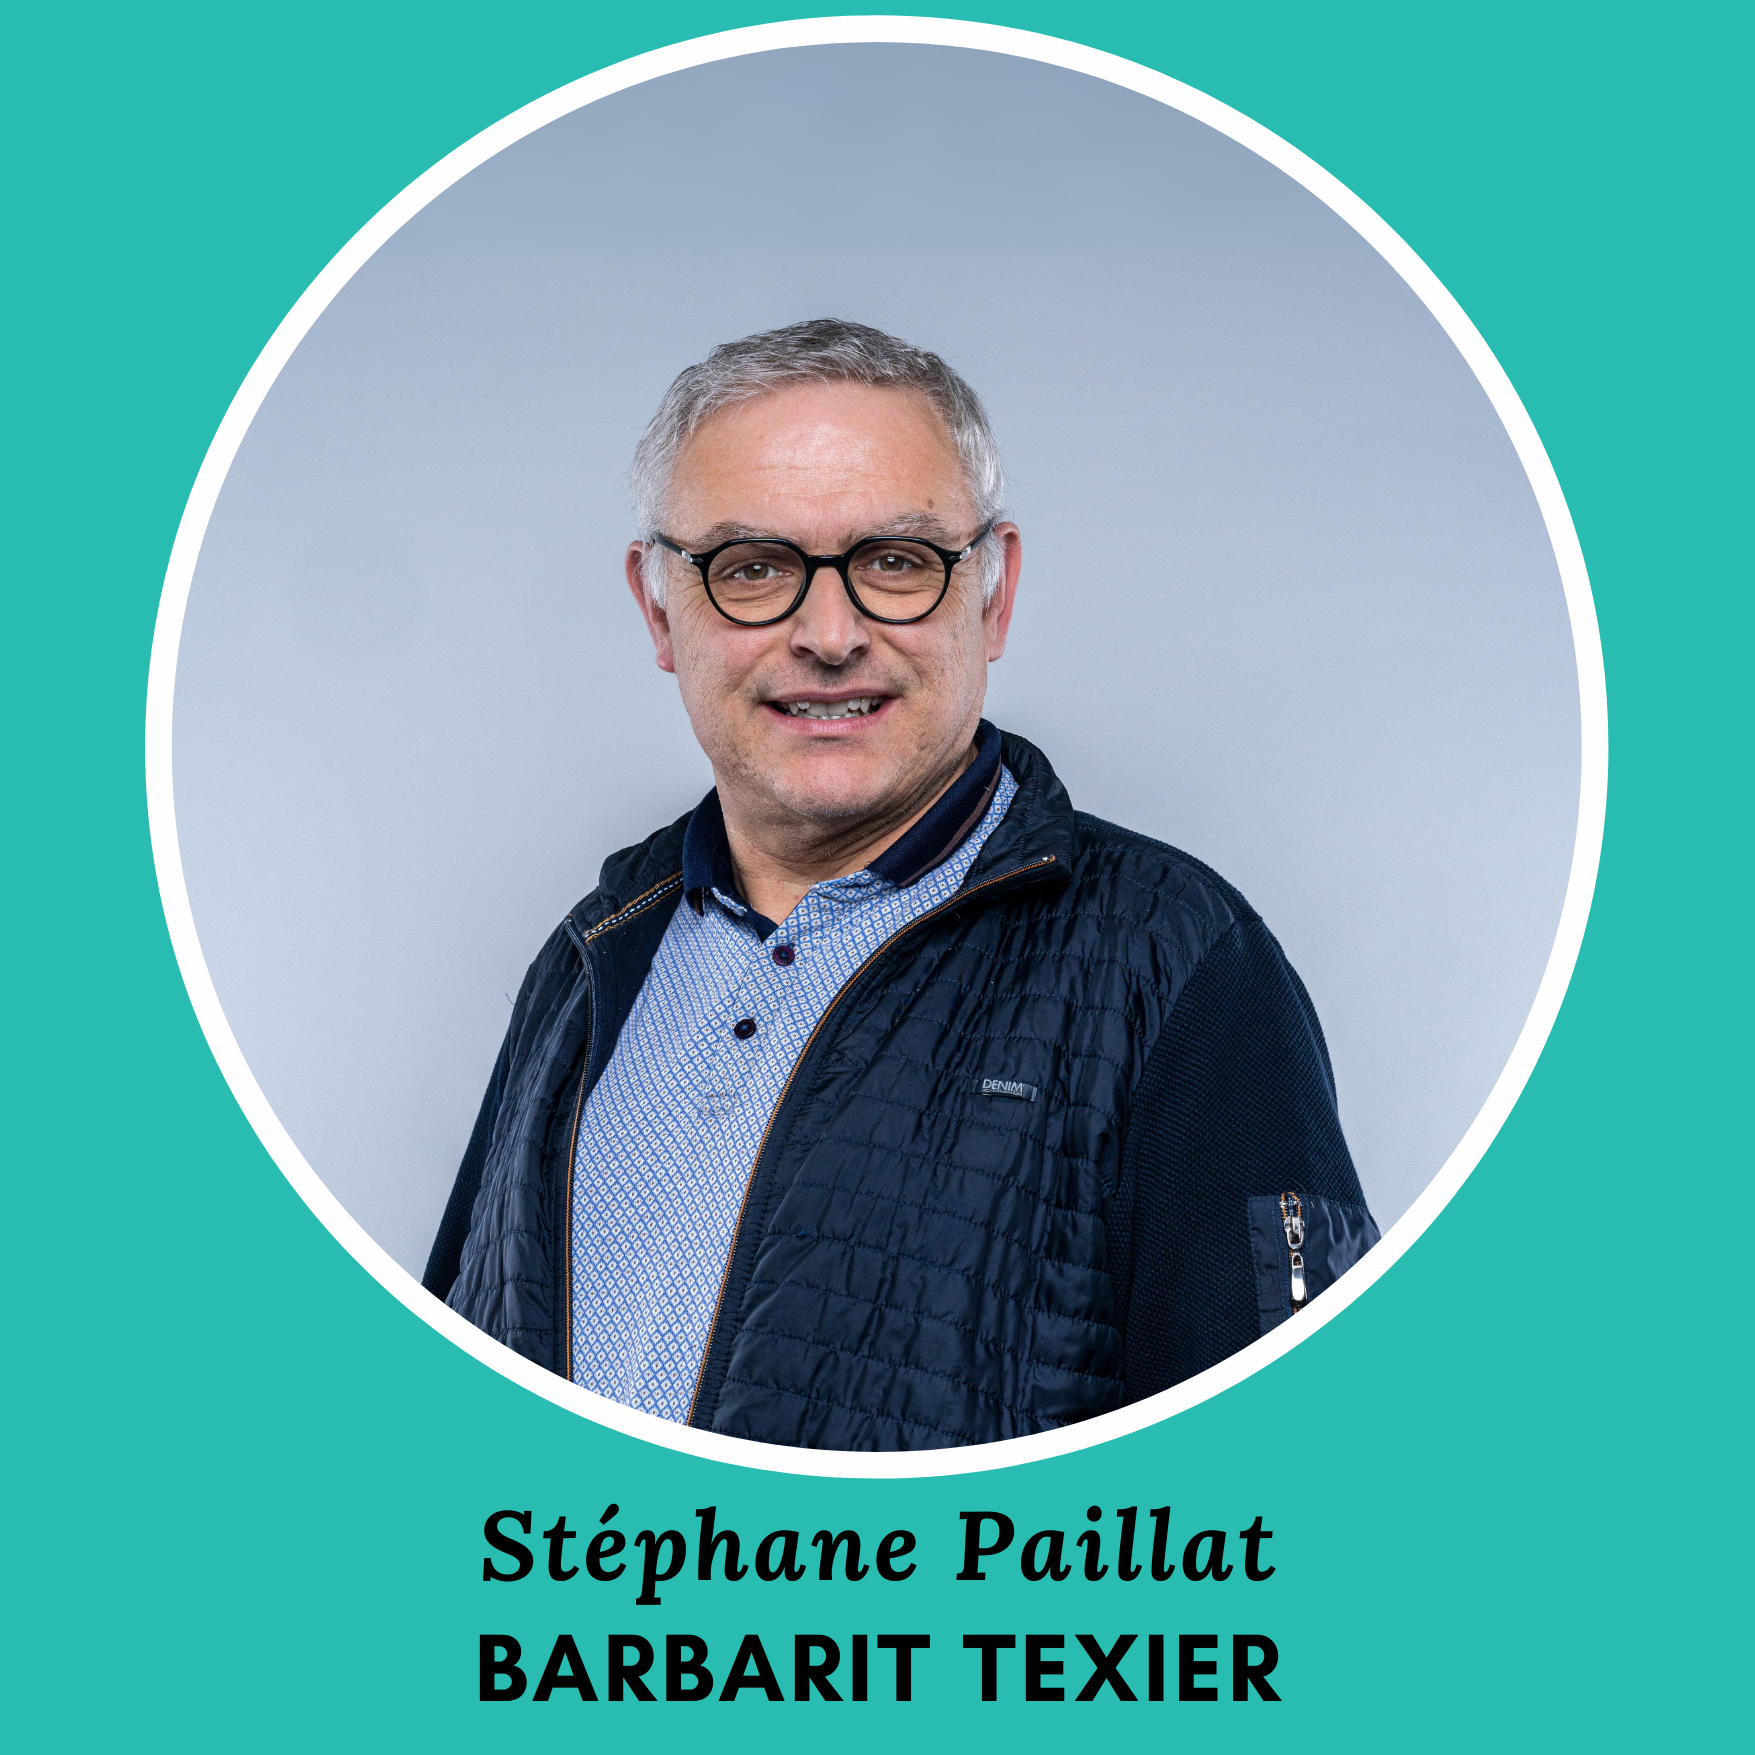 BARBARIT TEXIER [reprise] : Stéphane PAILLAT